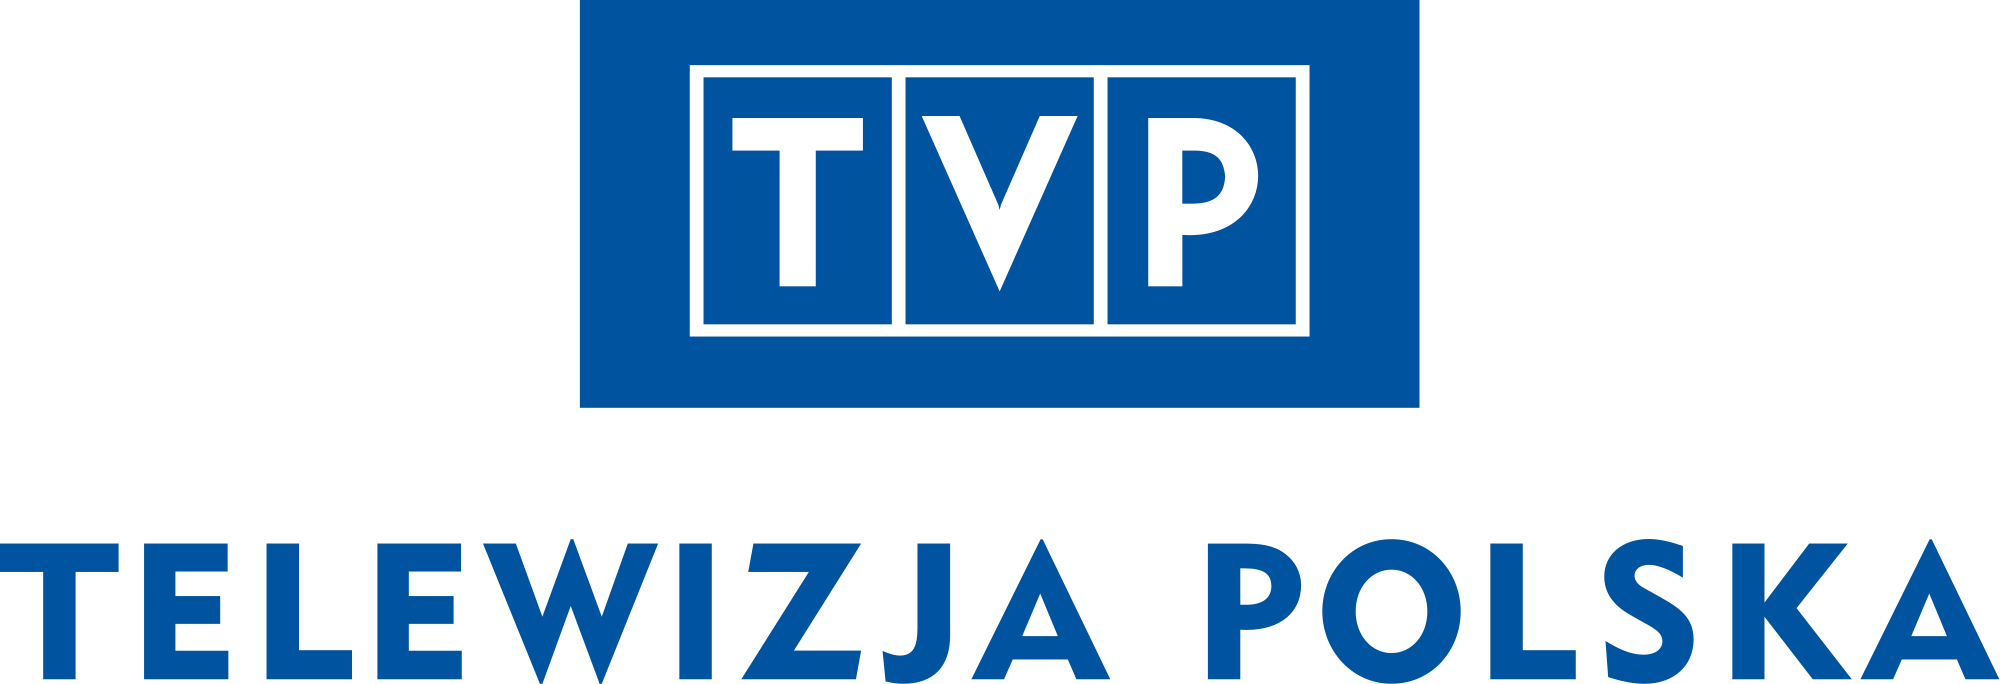 Il logo della tv pubblica polacca